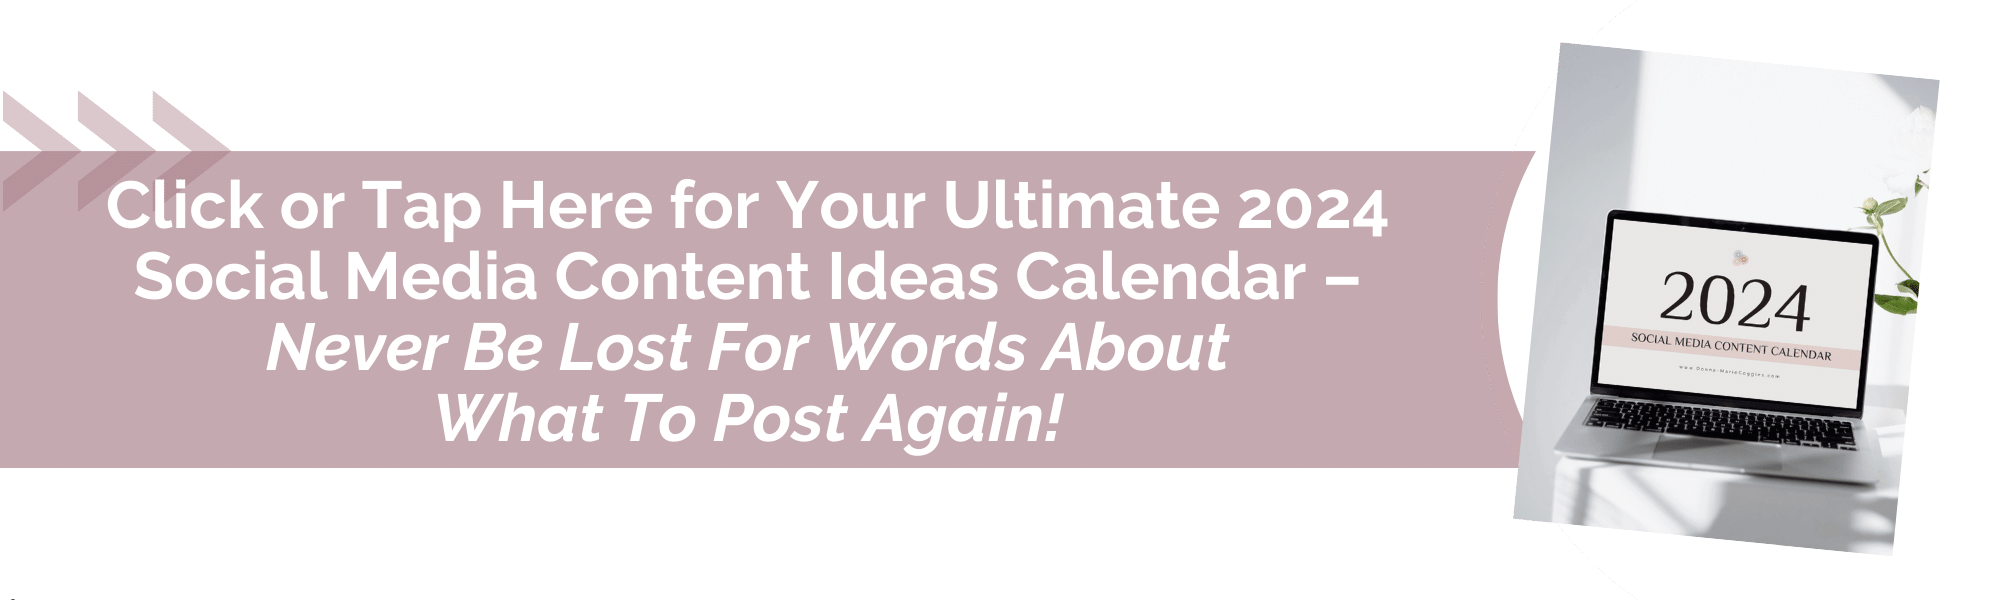 2024 social media content ideas calendar